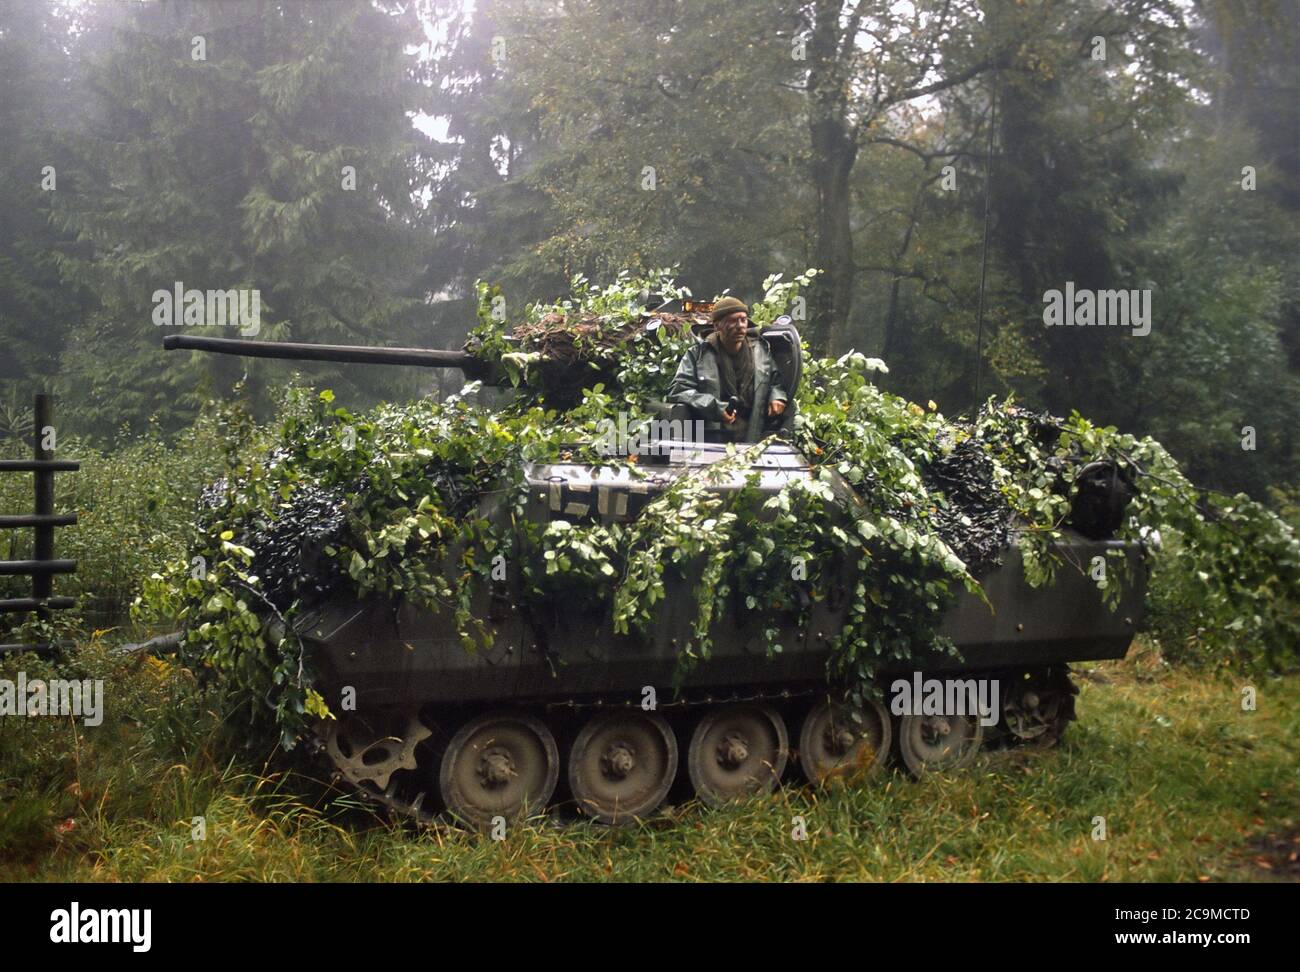 - NATO Exercises in Germany, Belgian Army YPR-765 armored infantry fighting vehicle (September 1986)   - Esercitazioni NATO in Germania, veicolo da combattimento per fanteria meccanizzata YPR-765 dell'Esercito Belga  (Settembre 1986) Stock Photo